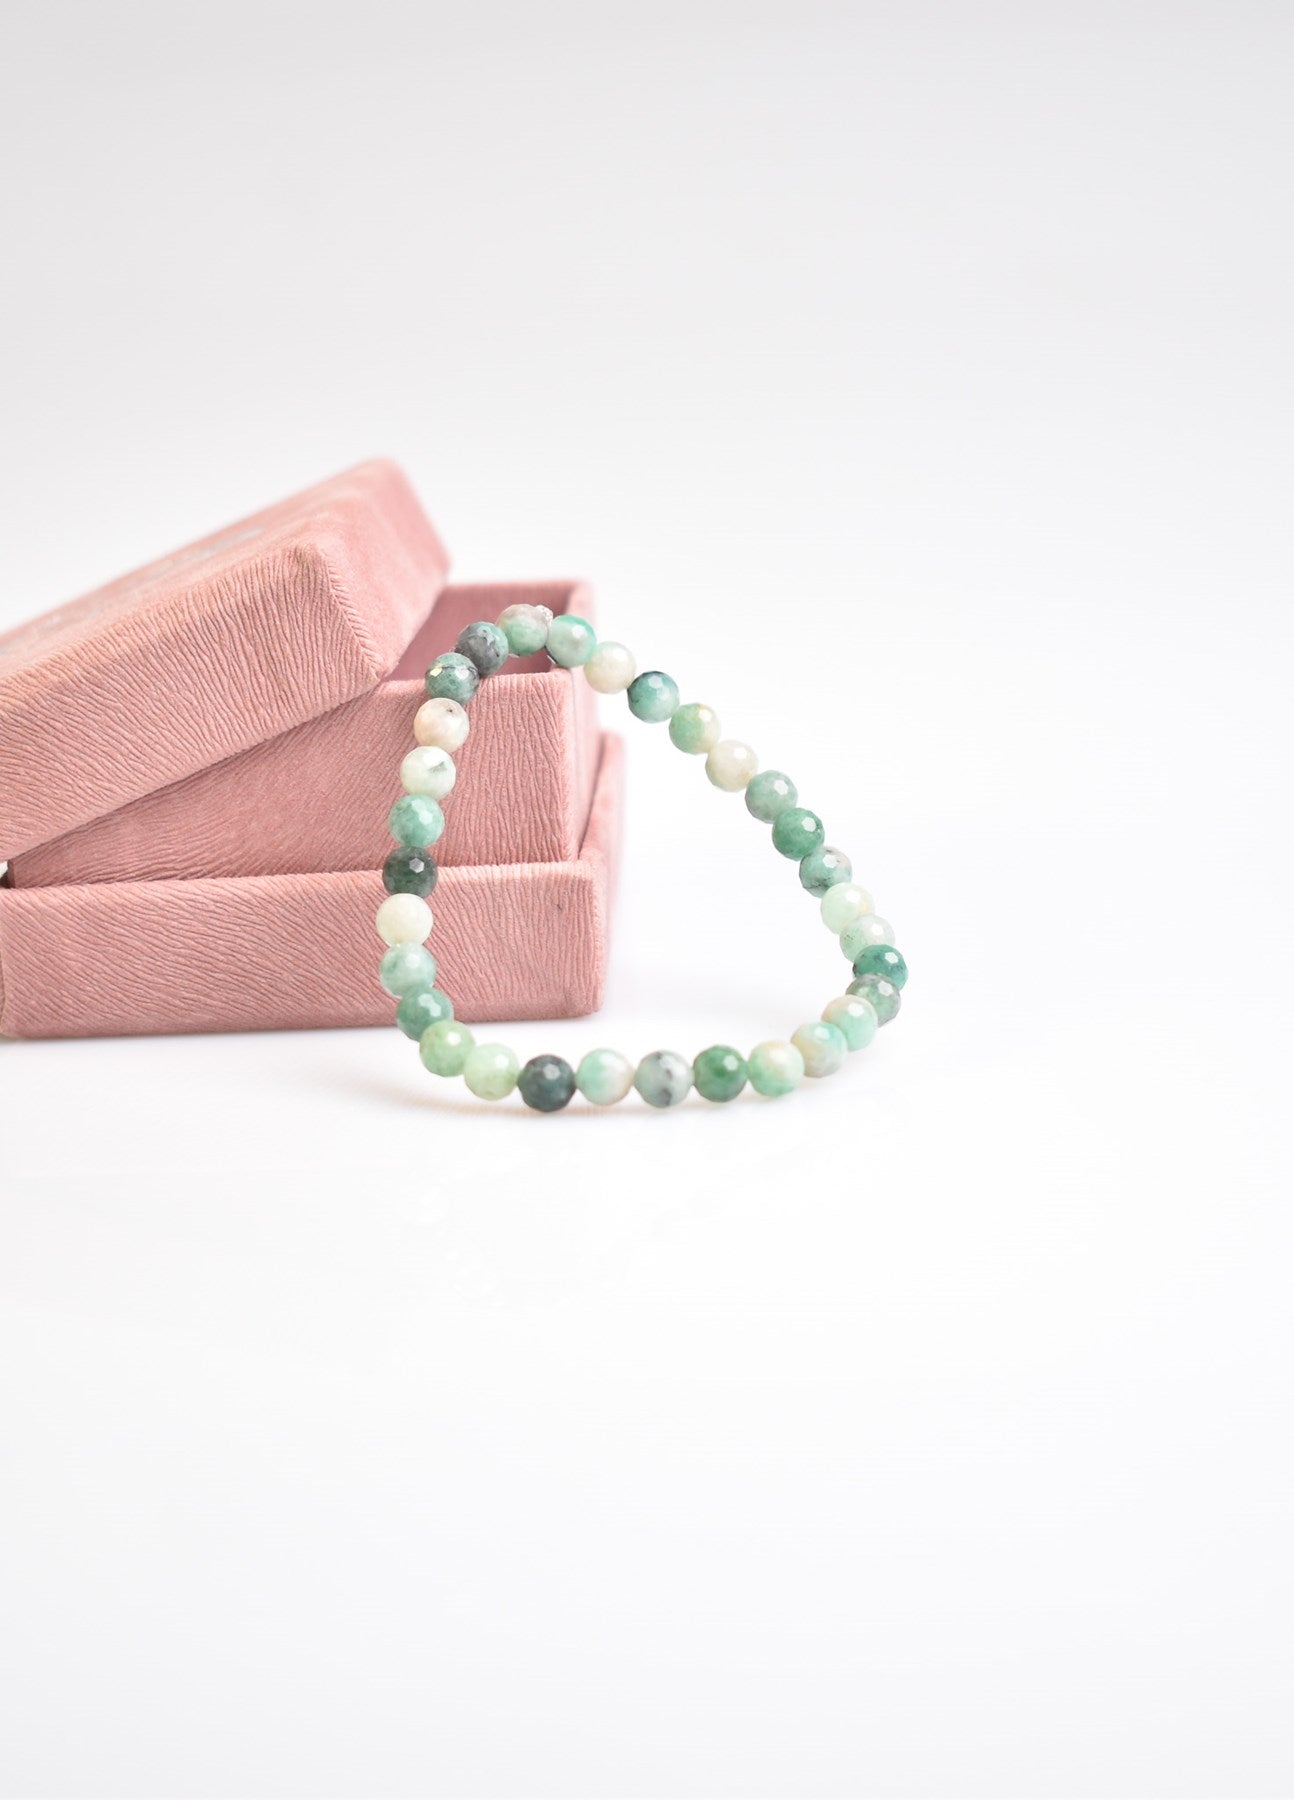 Emerald Natural Gemstone Bracelet 6mm